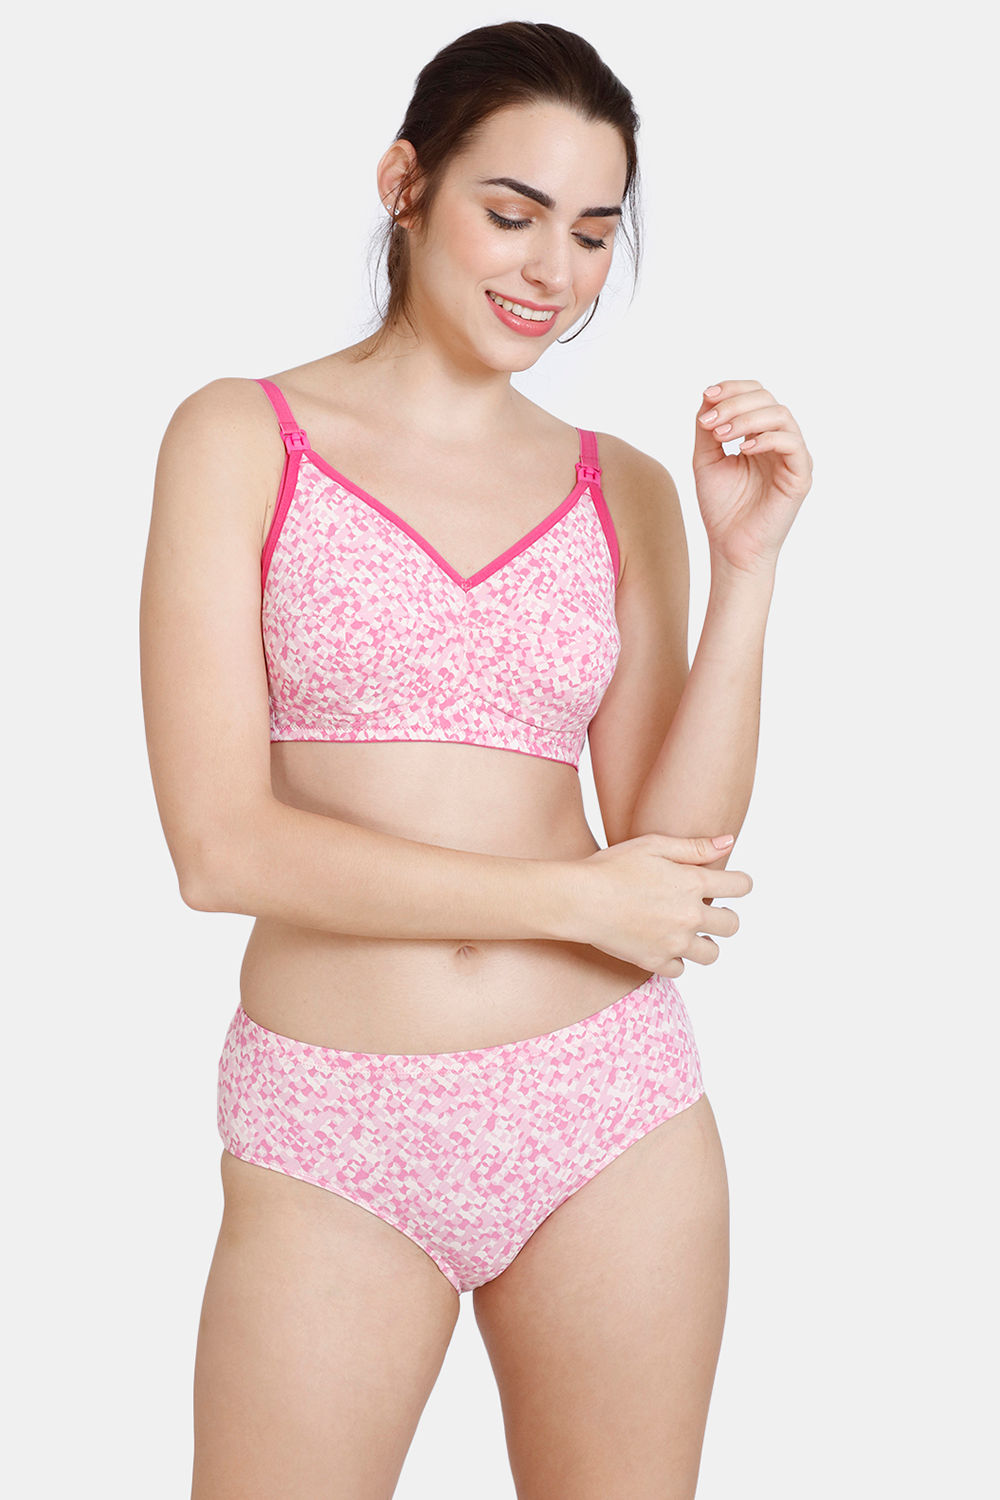 Designer Fancy Bra-Panty Sets For Womens/Girls (Pack Of 3 - Pink,Red,Black)